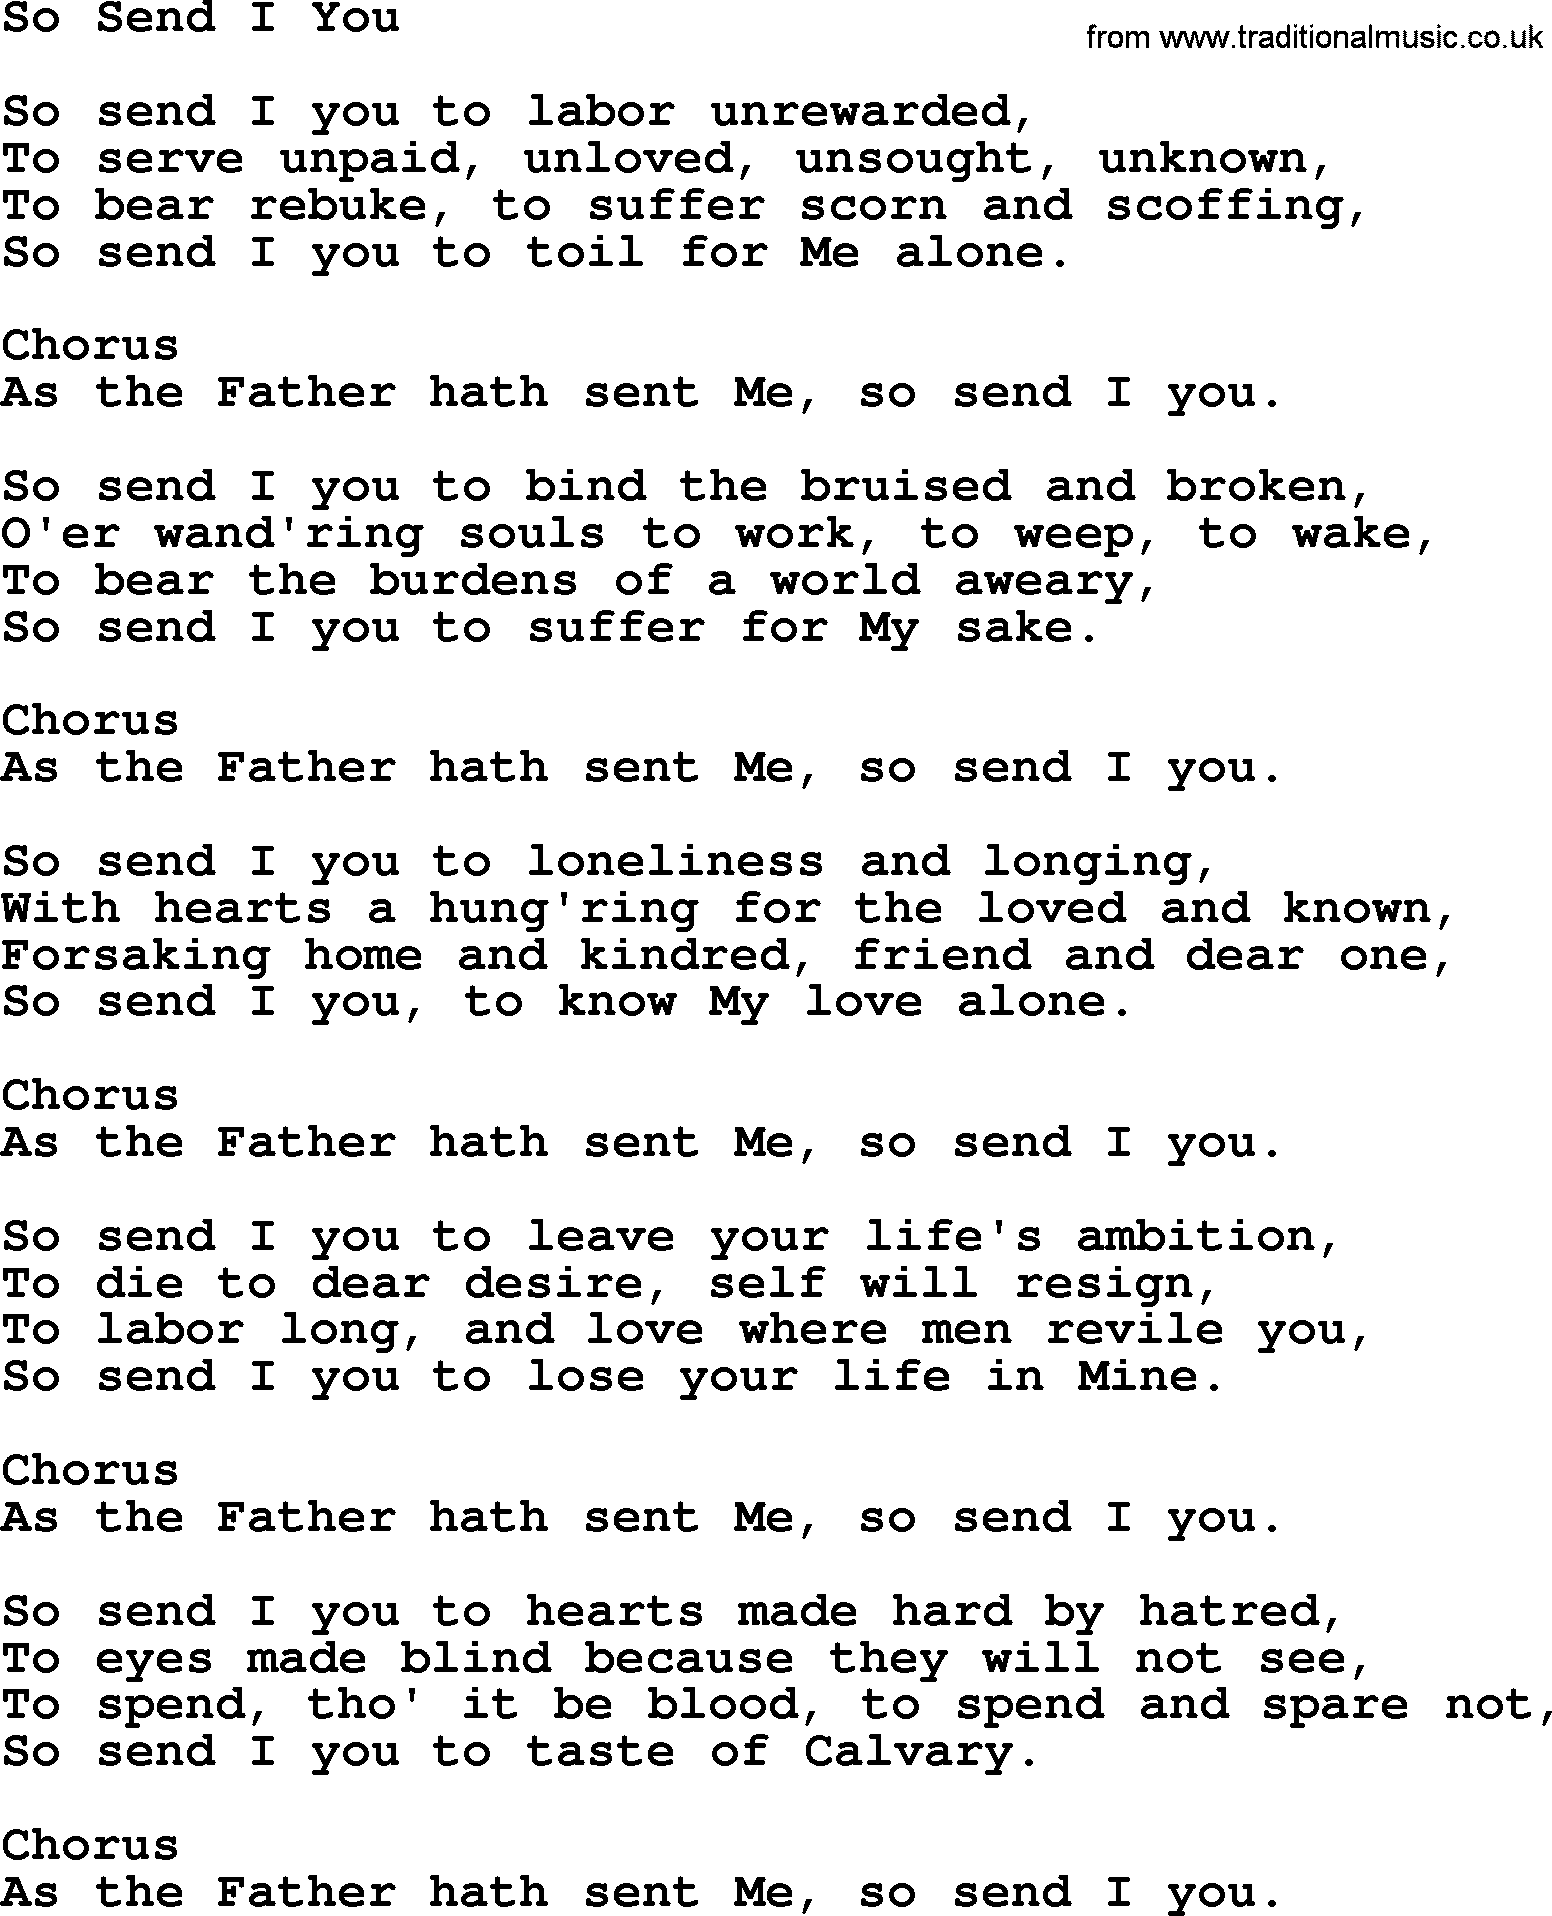 Baptist Hymnal Hymn: So Send I You, lyrics with pdf